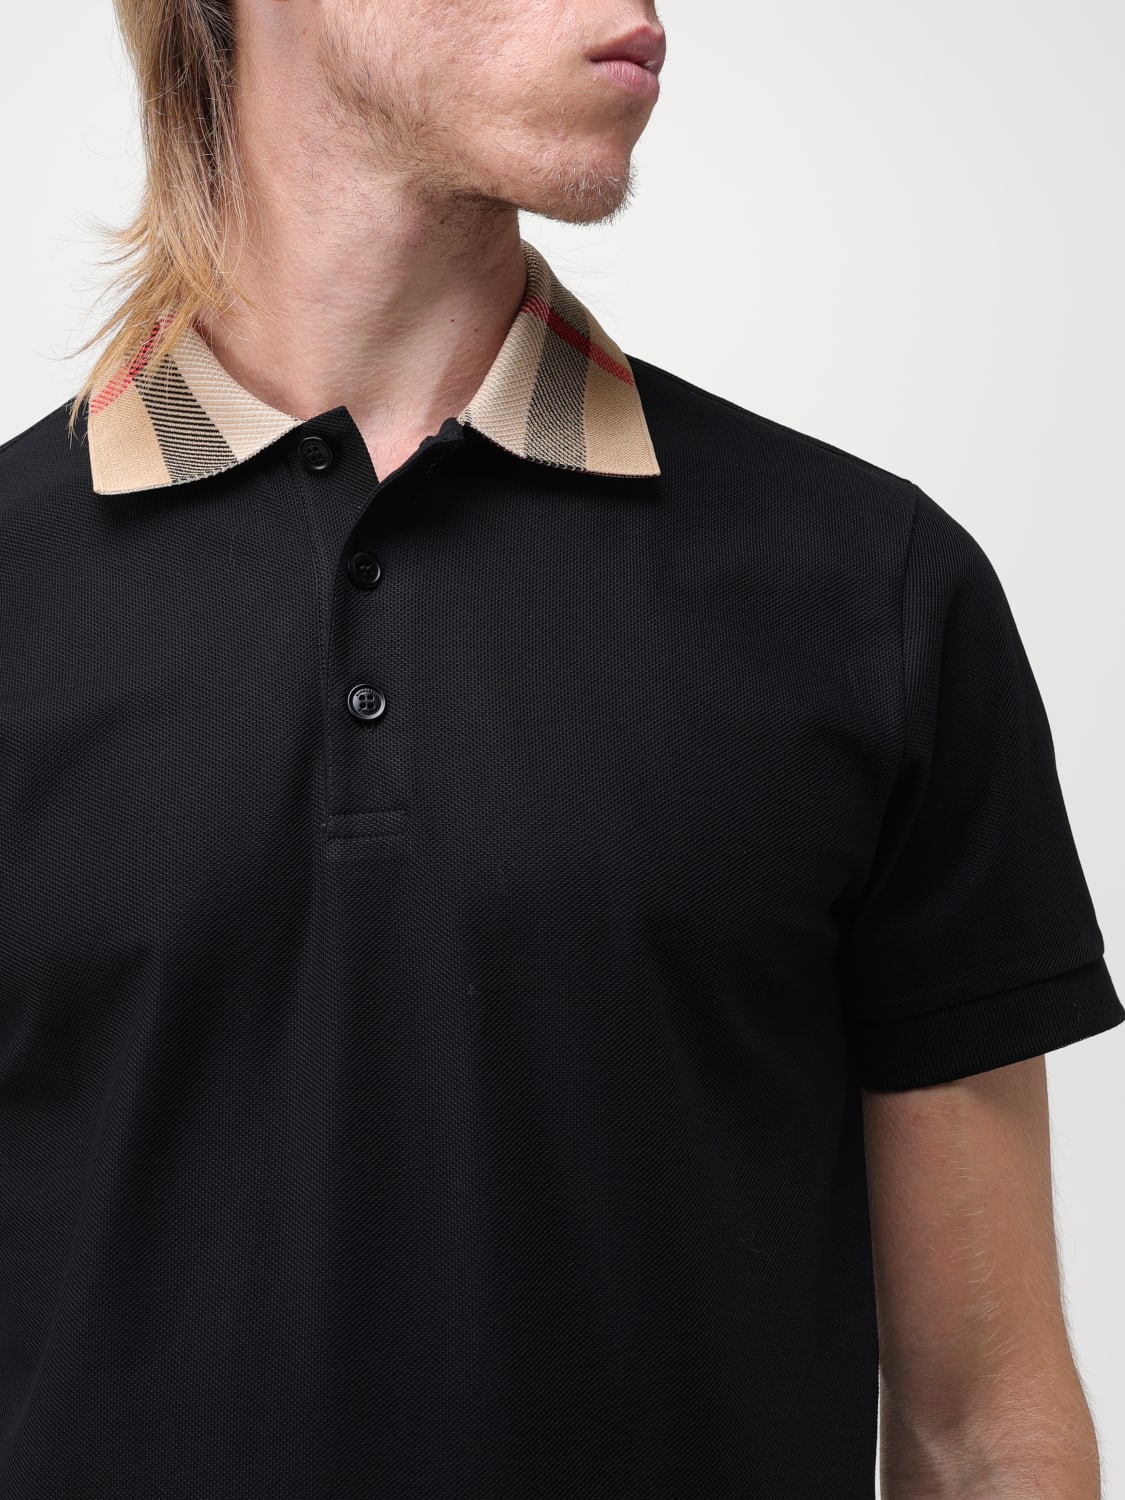 Burberry Men's Check Collar Polo Shirt